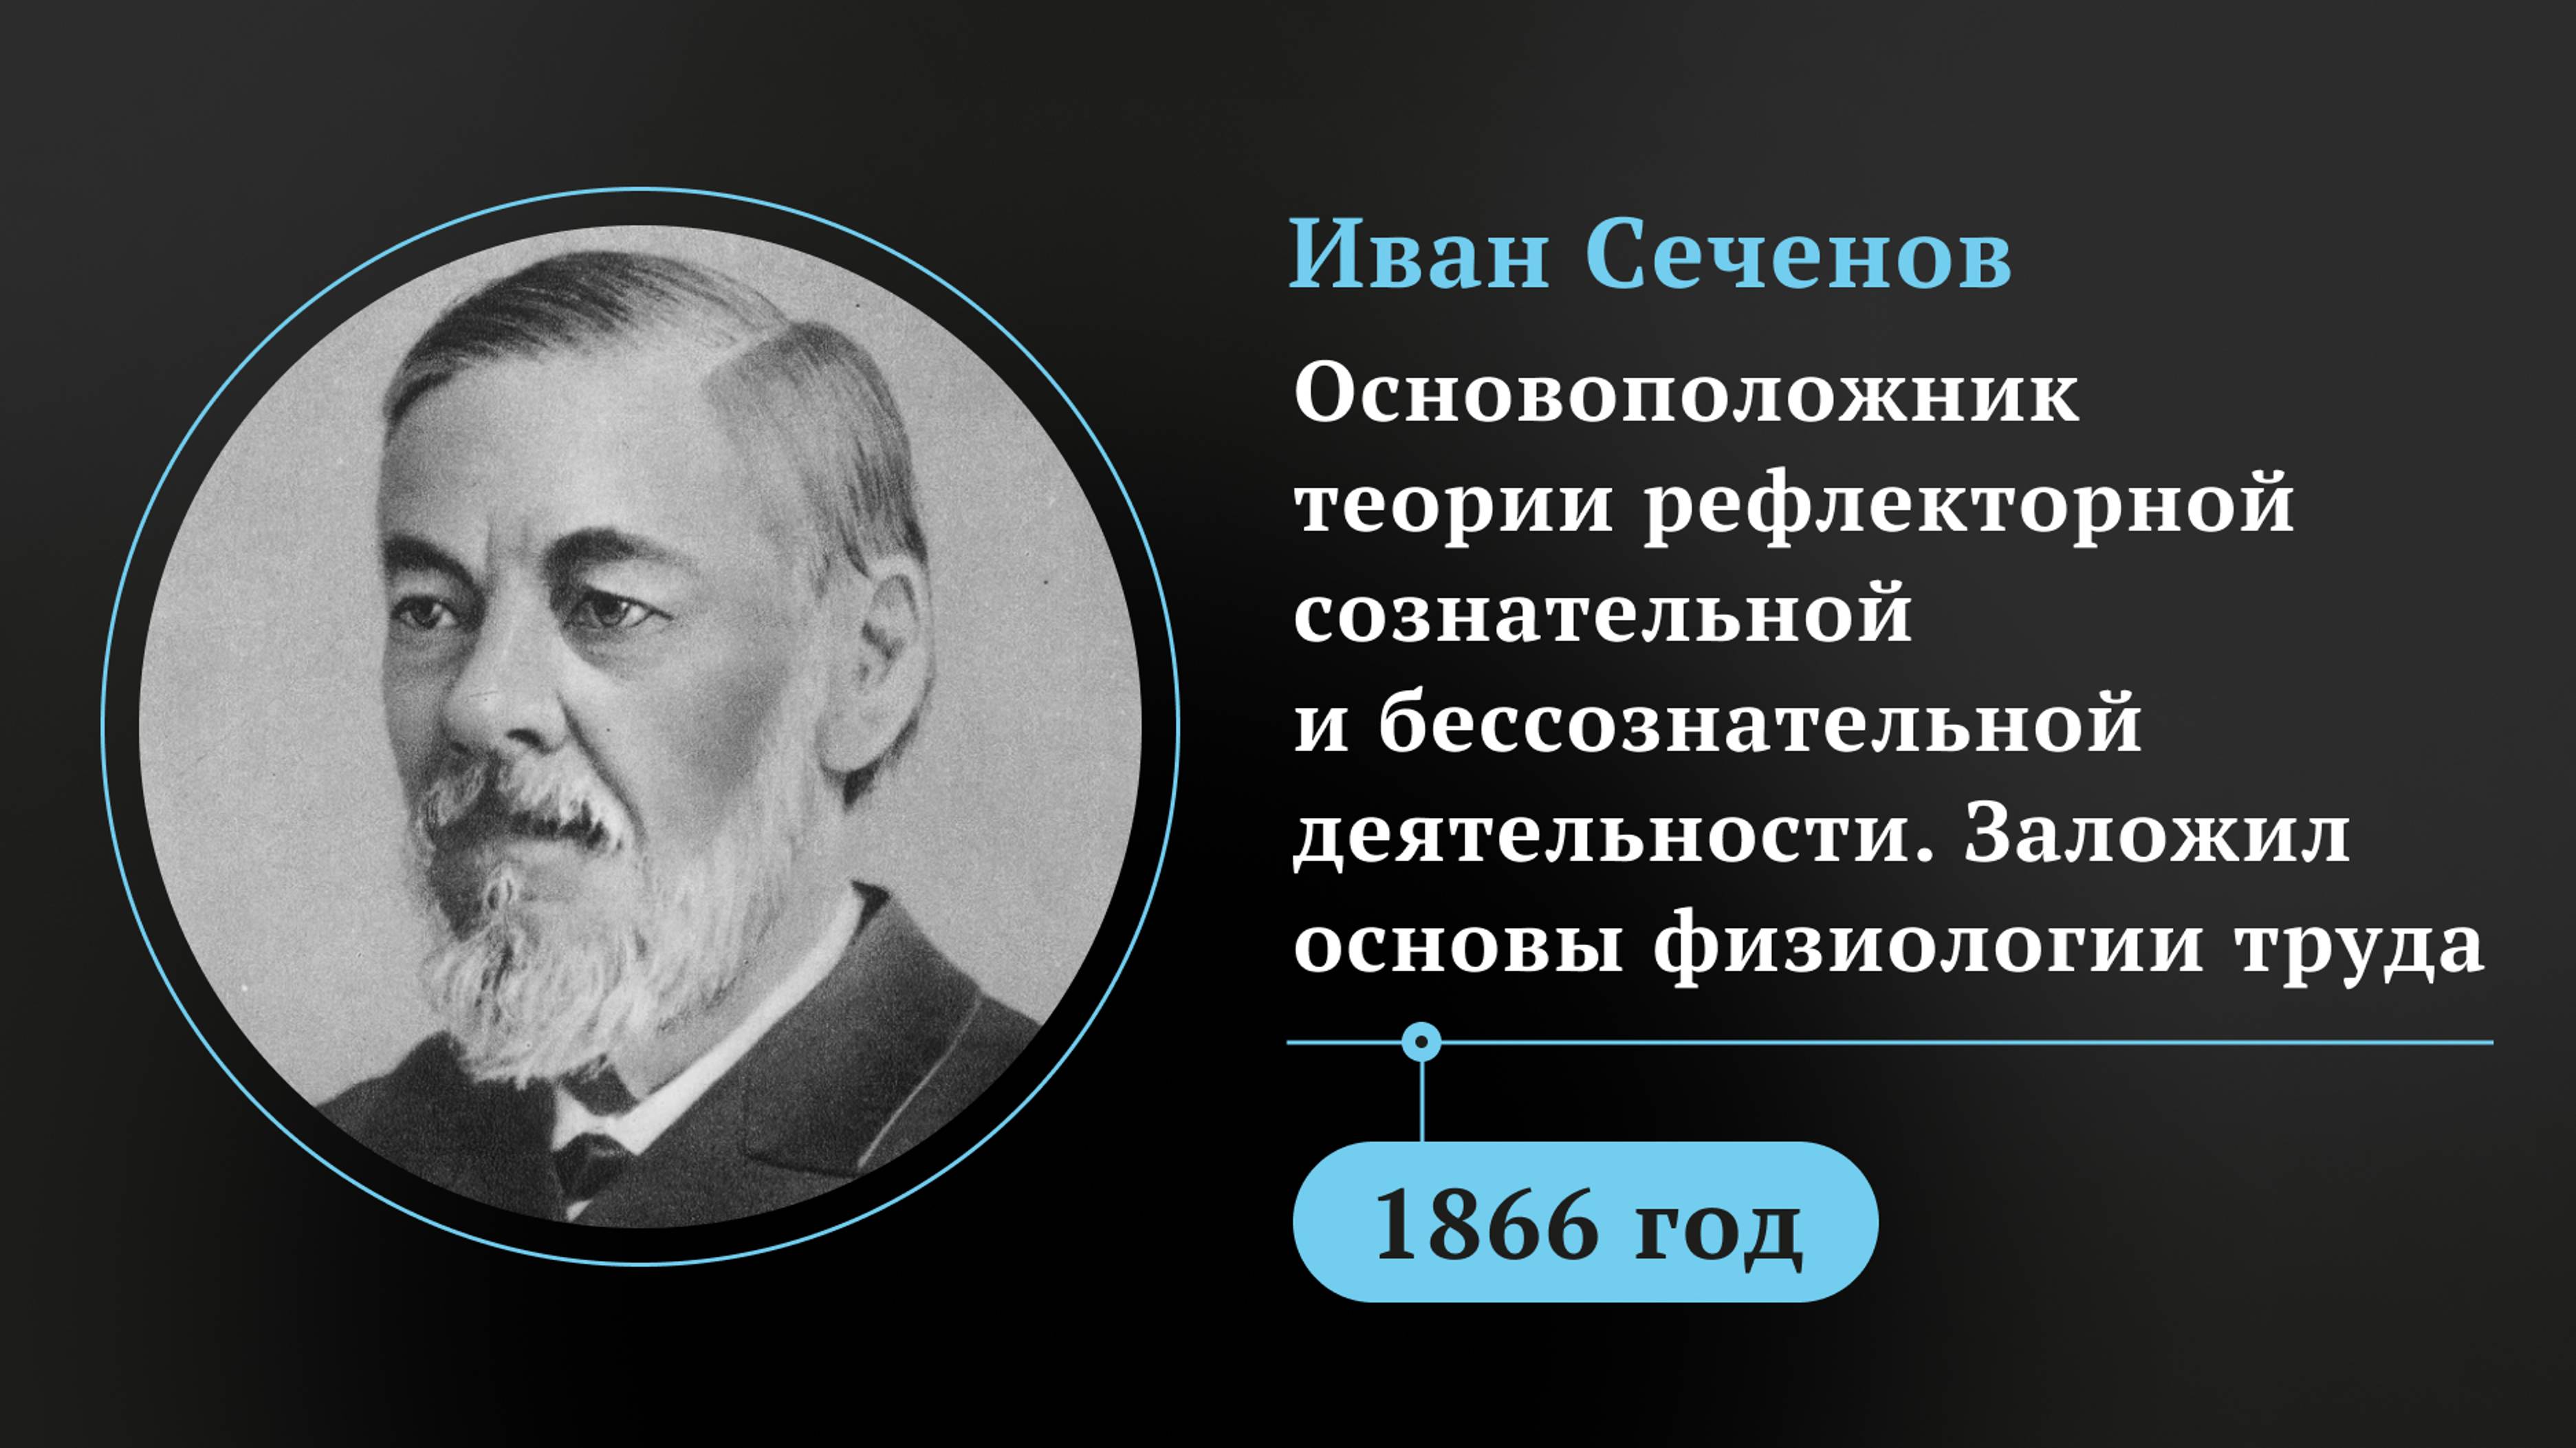 Иван Сеченов. Основоположник теории рефлекторной сознательной и бессознательной деятельности